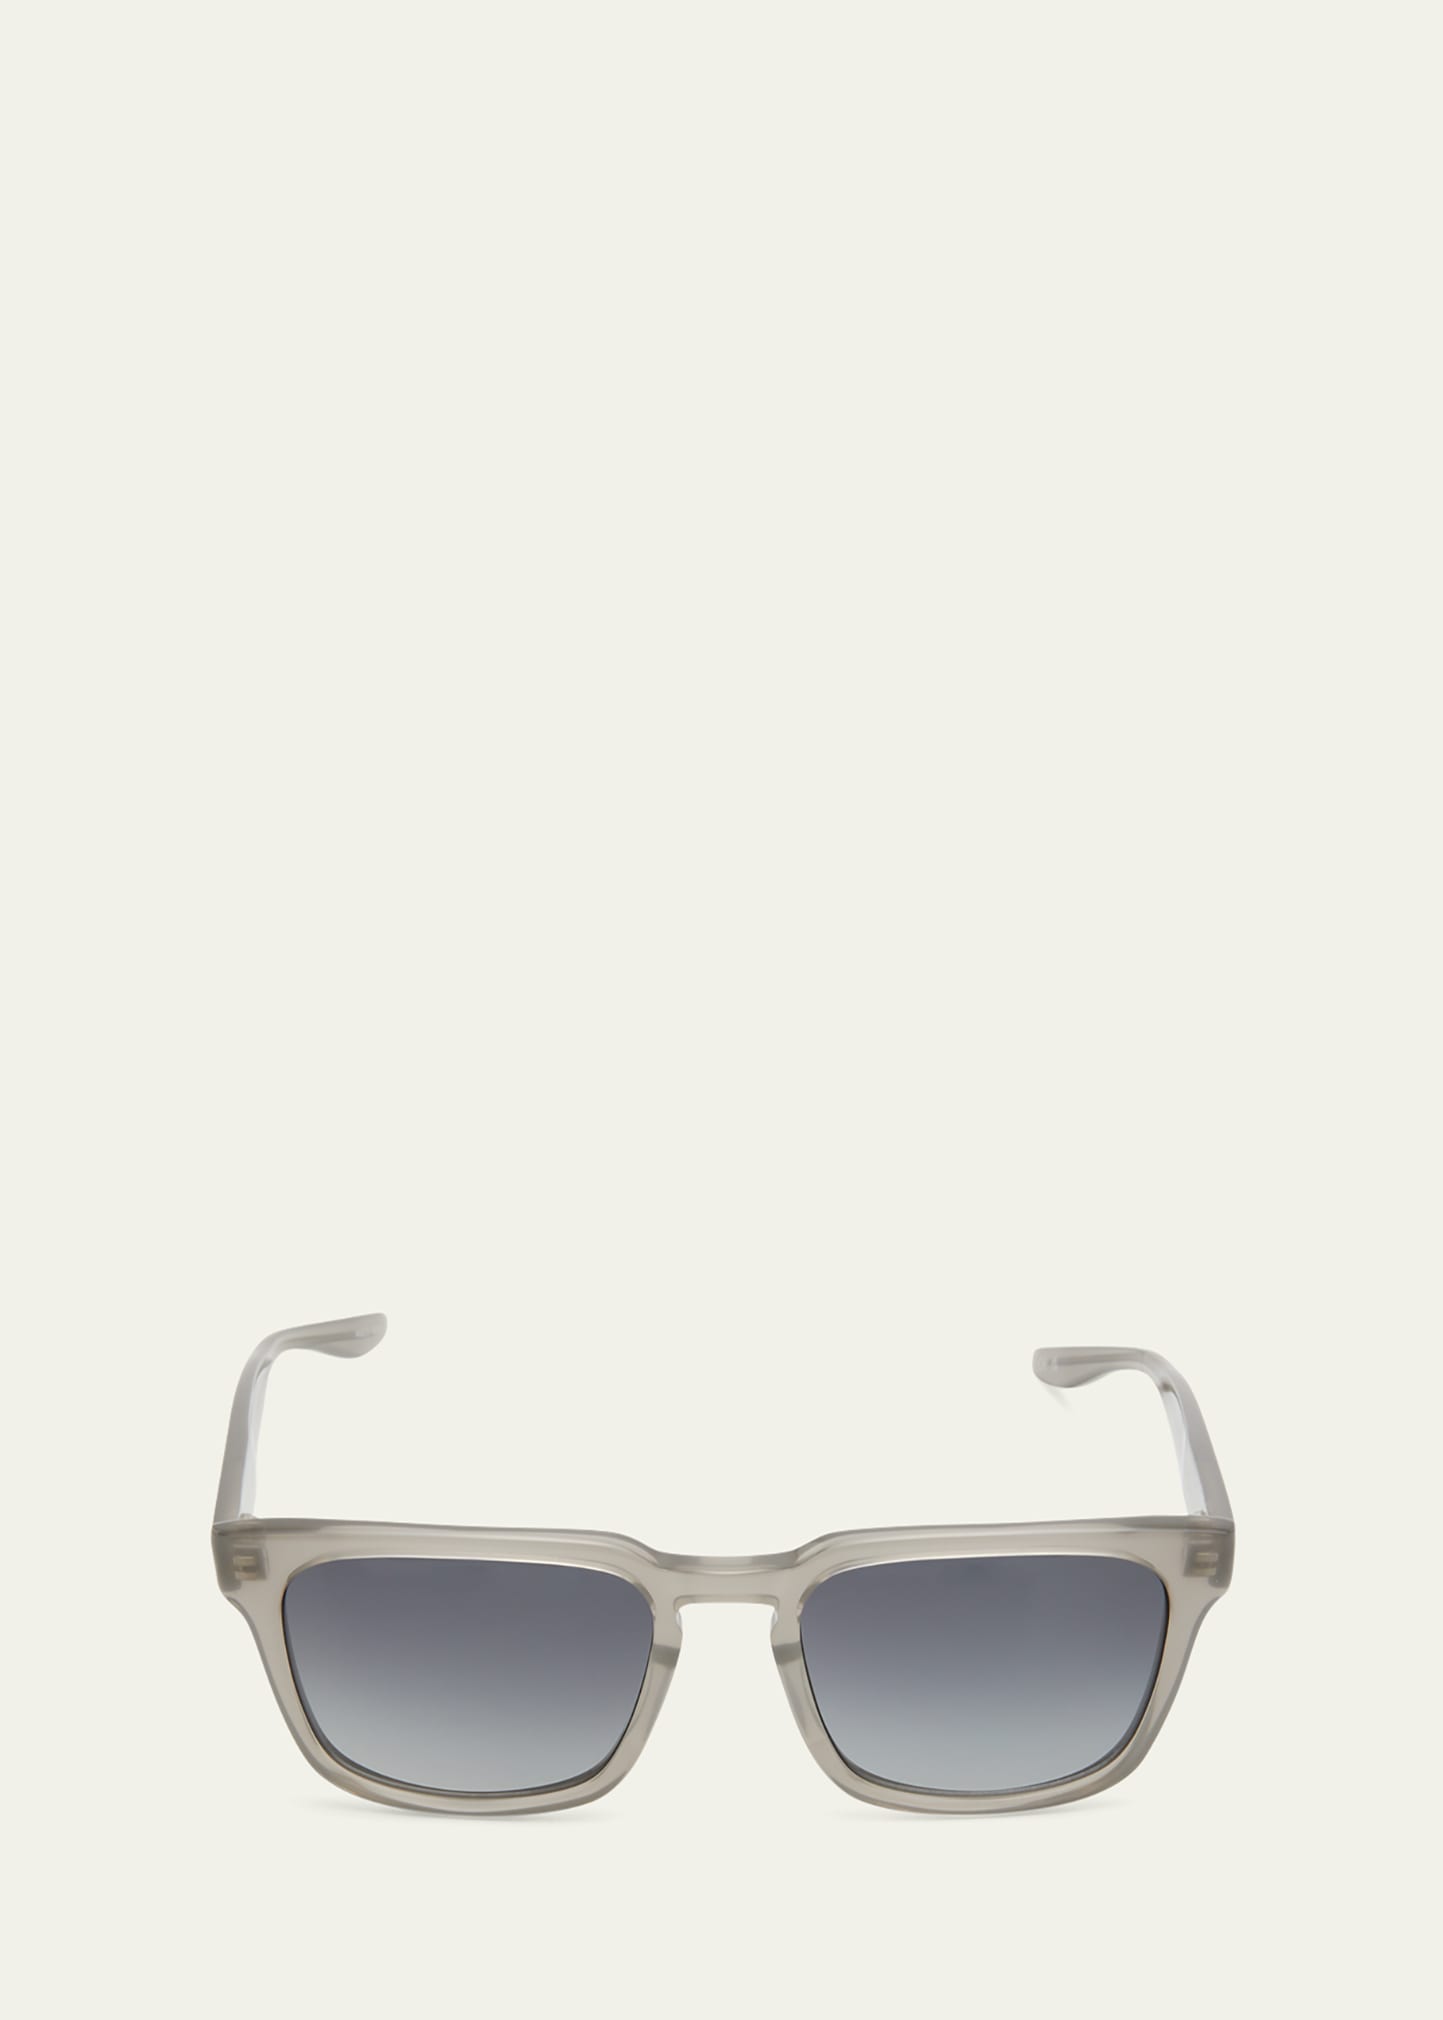 Men's Hamilton Keyhole Bridge Square Sunglasses